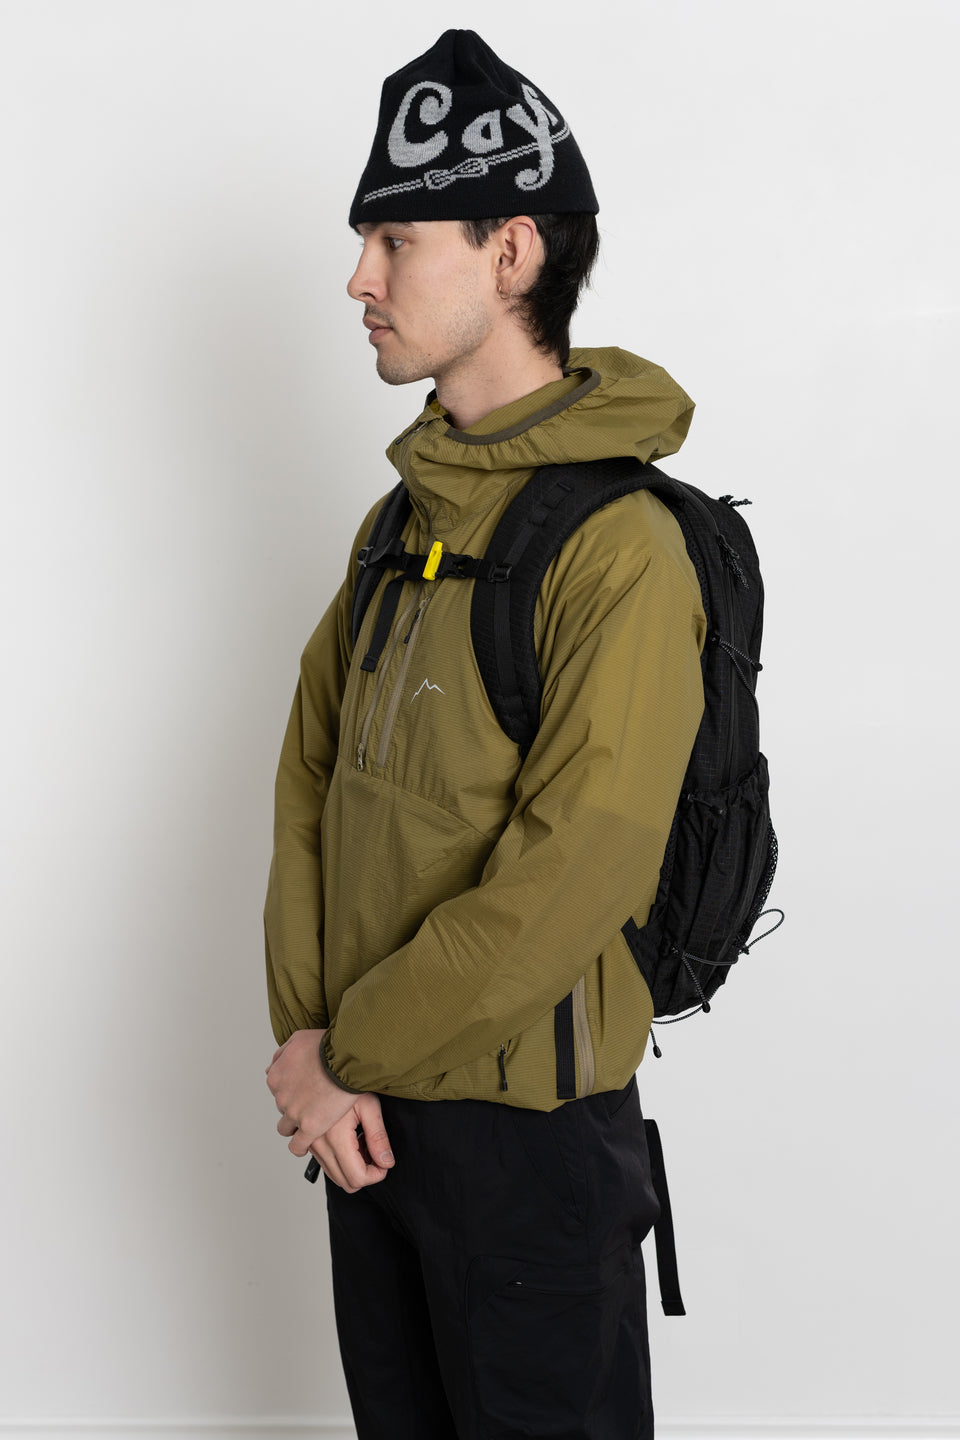 SOBAEK Backpack CAYL Grid Fabric Black